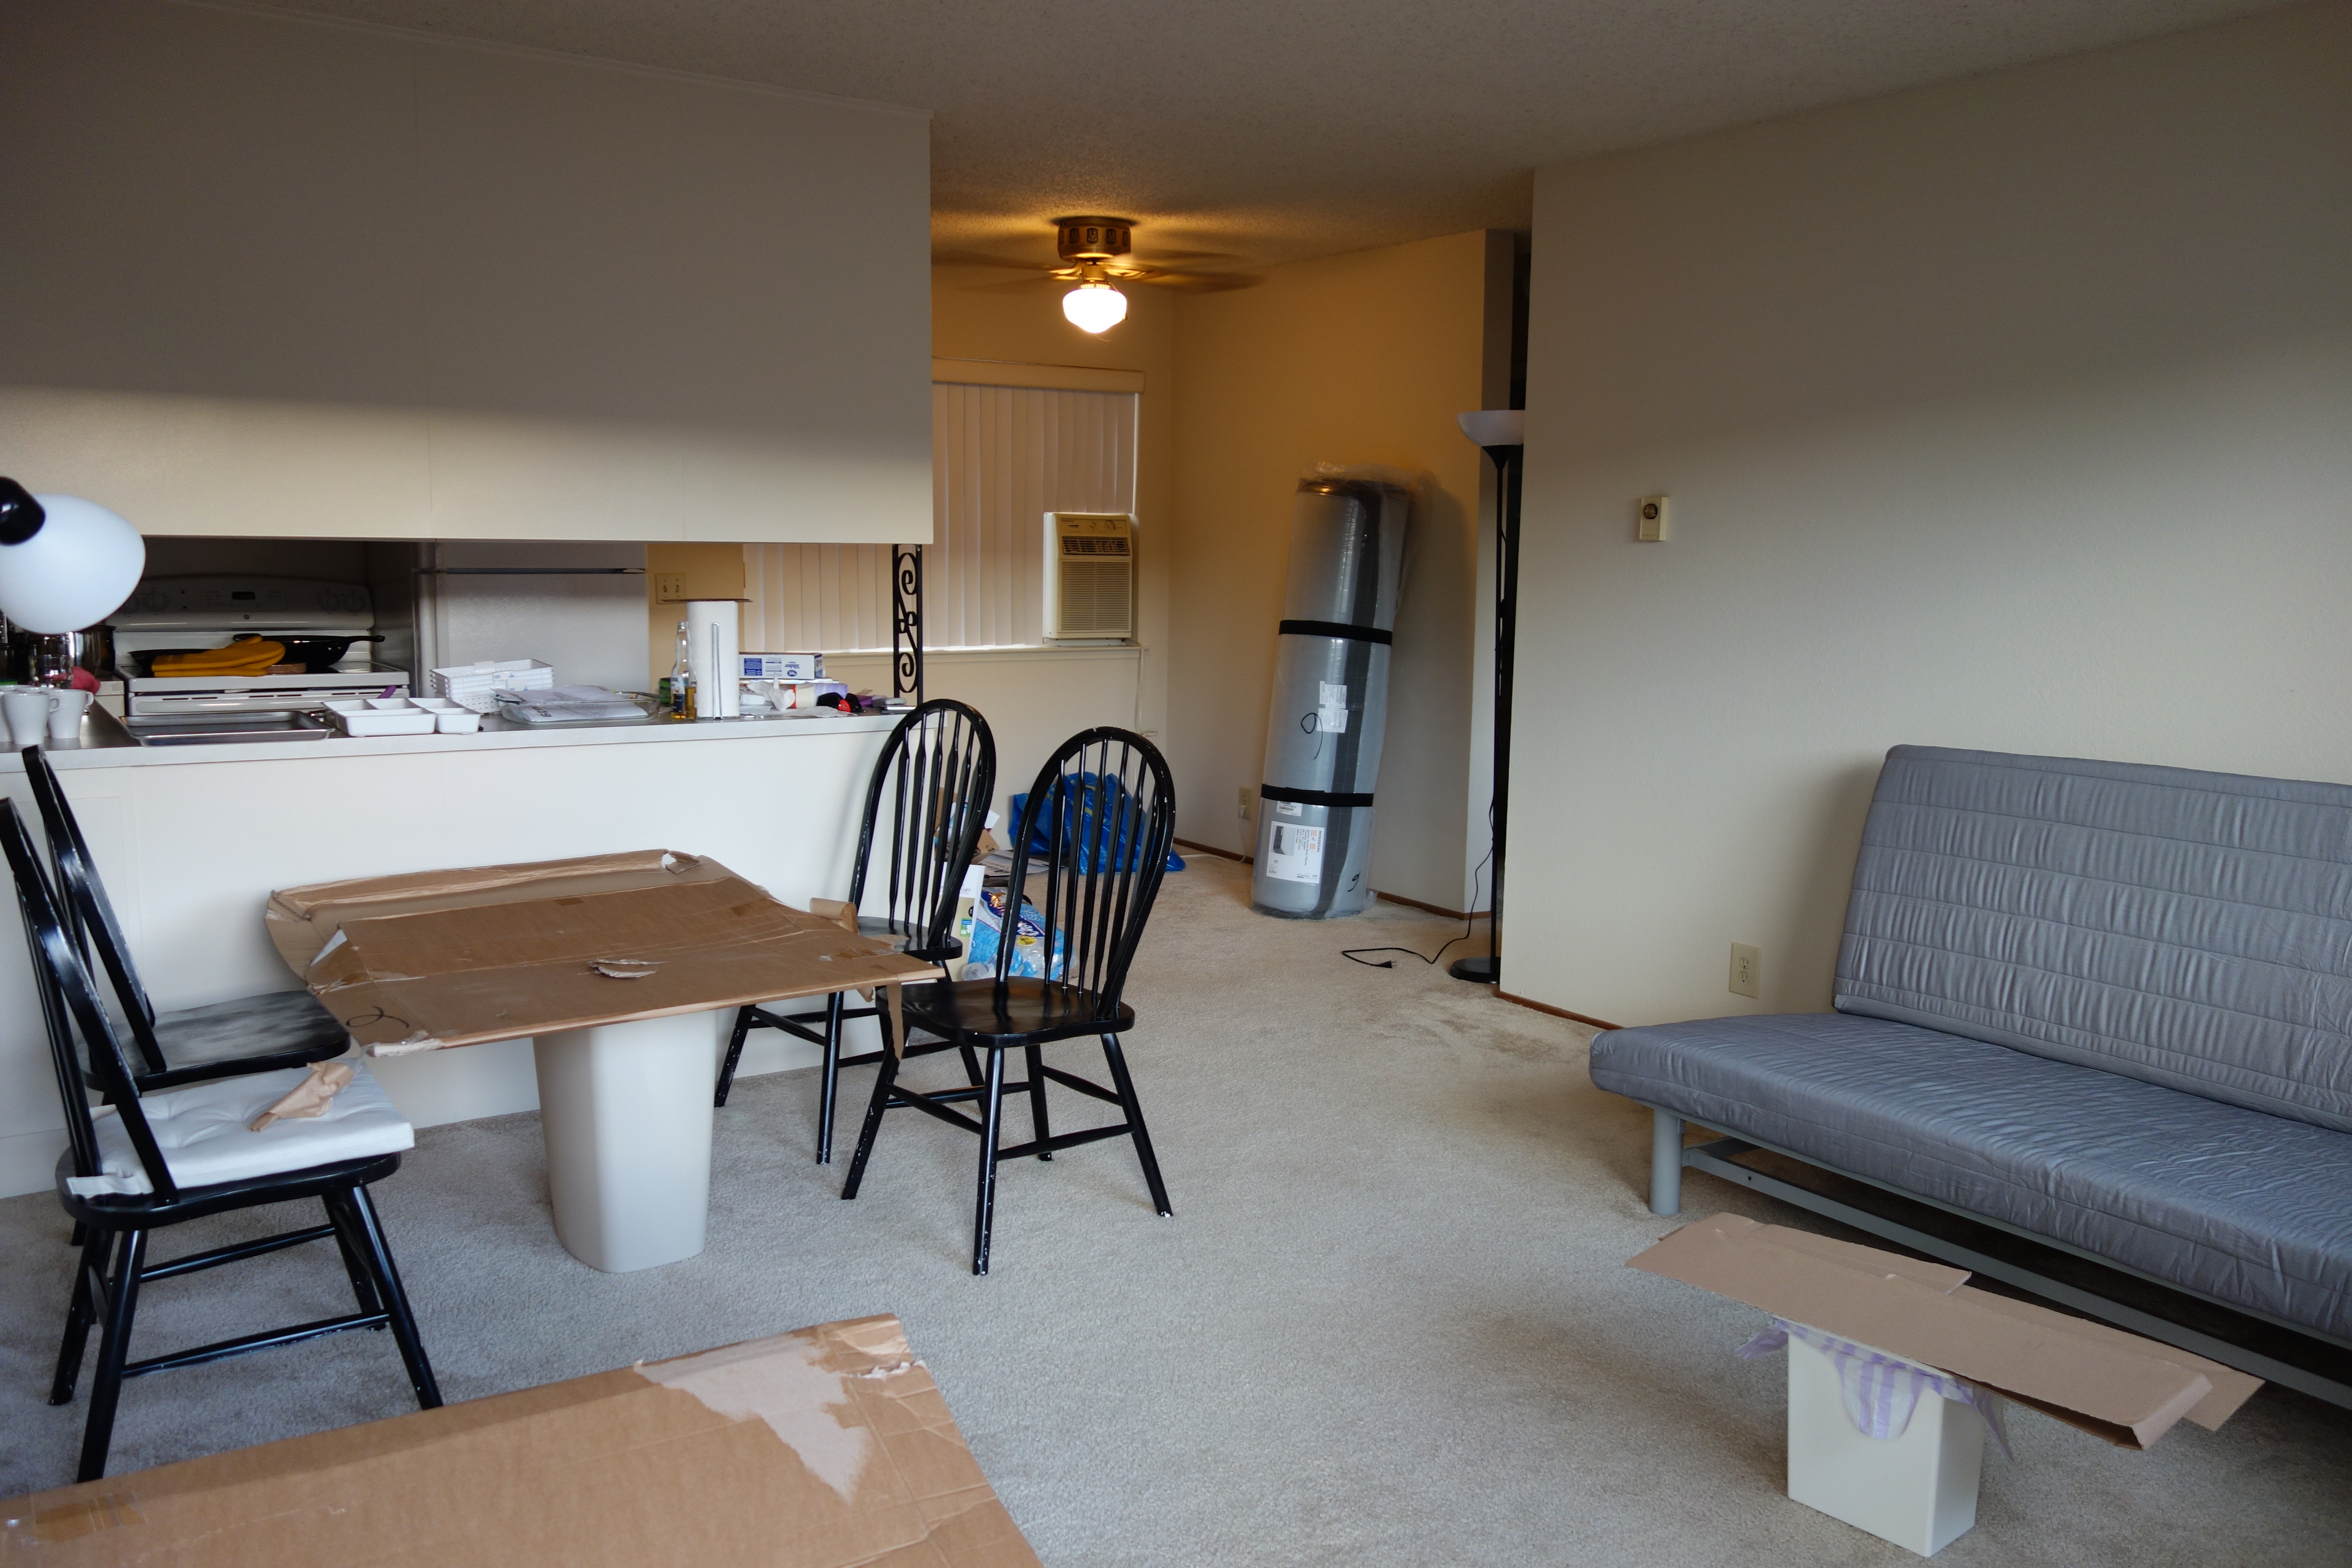 Kikis neue Wohnung: vier Stühle und eine Couch